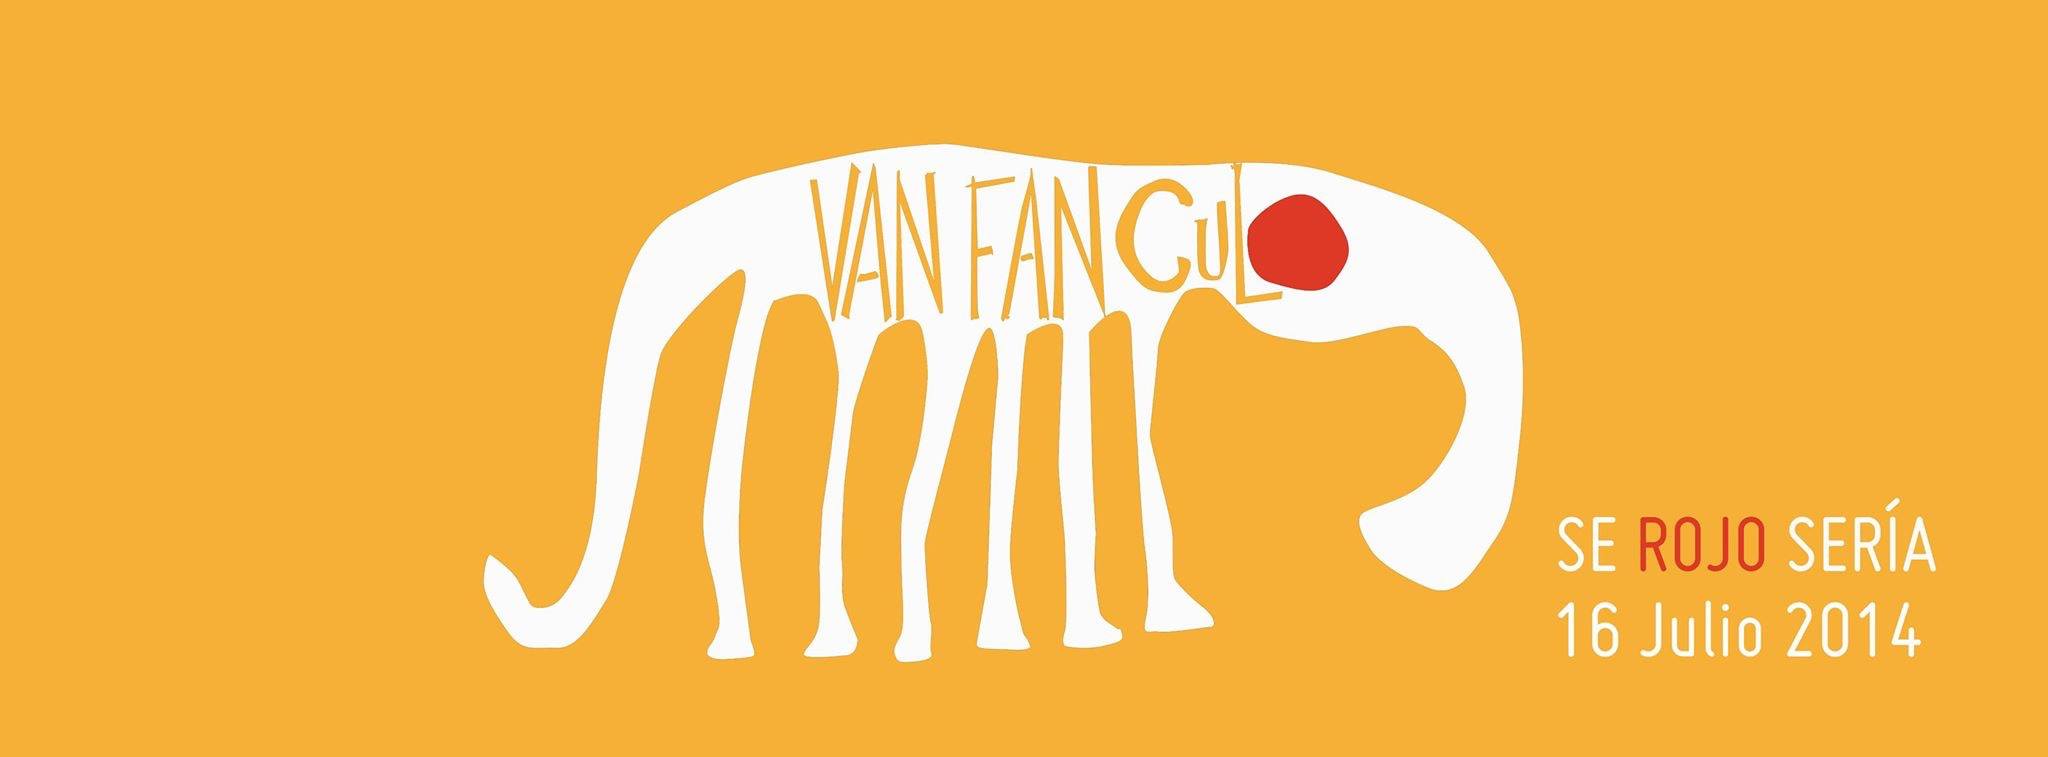 Van Fan Culo 2015